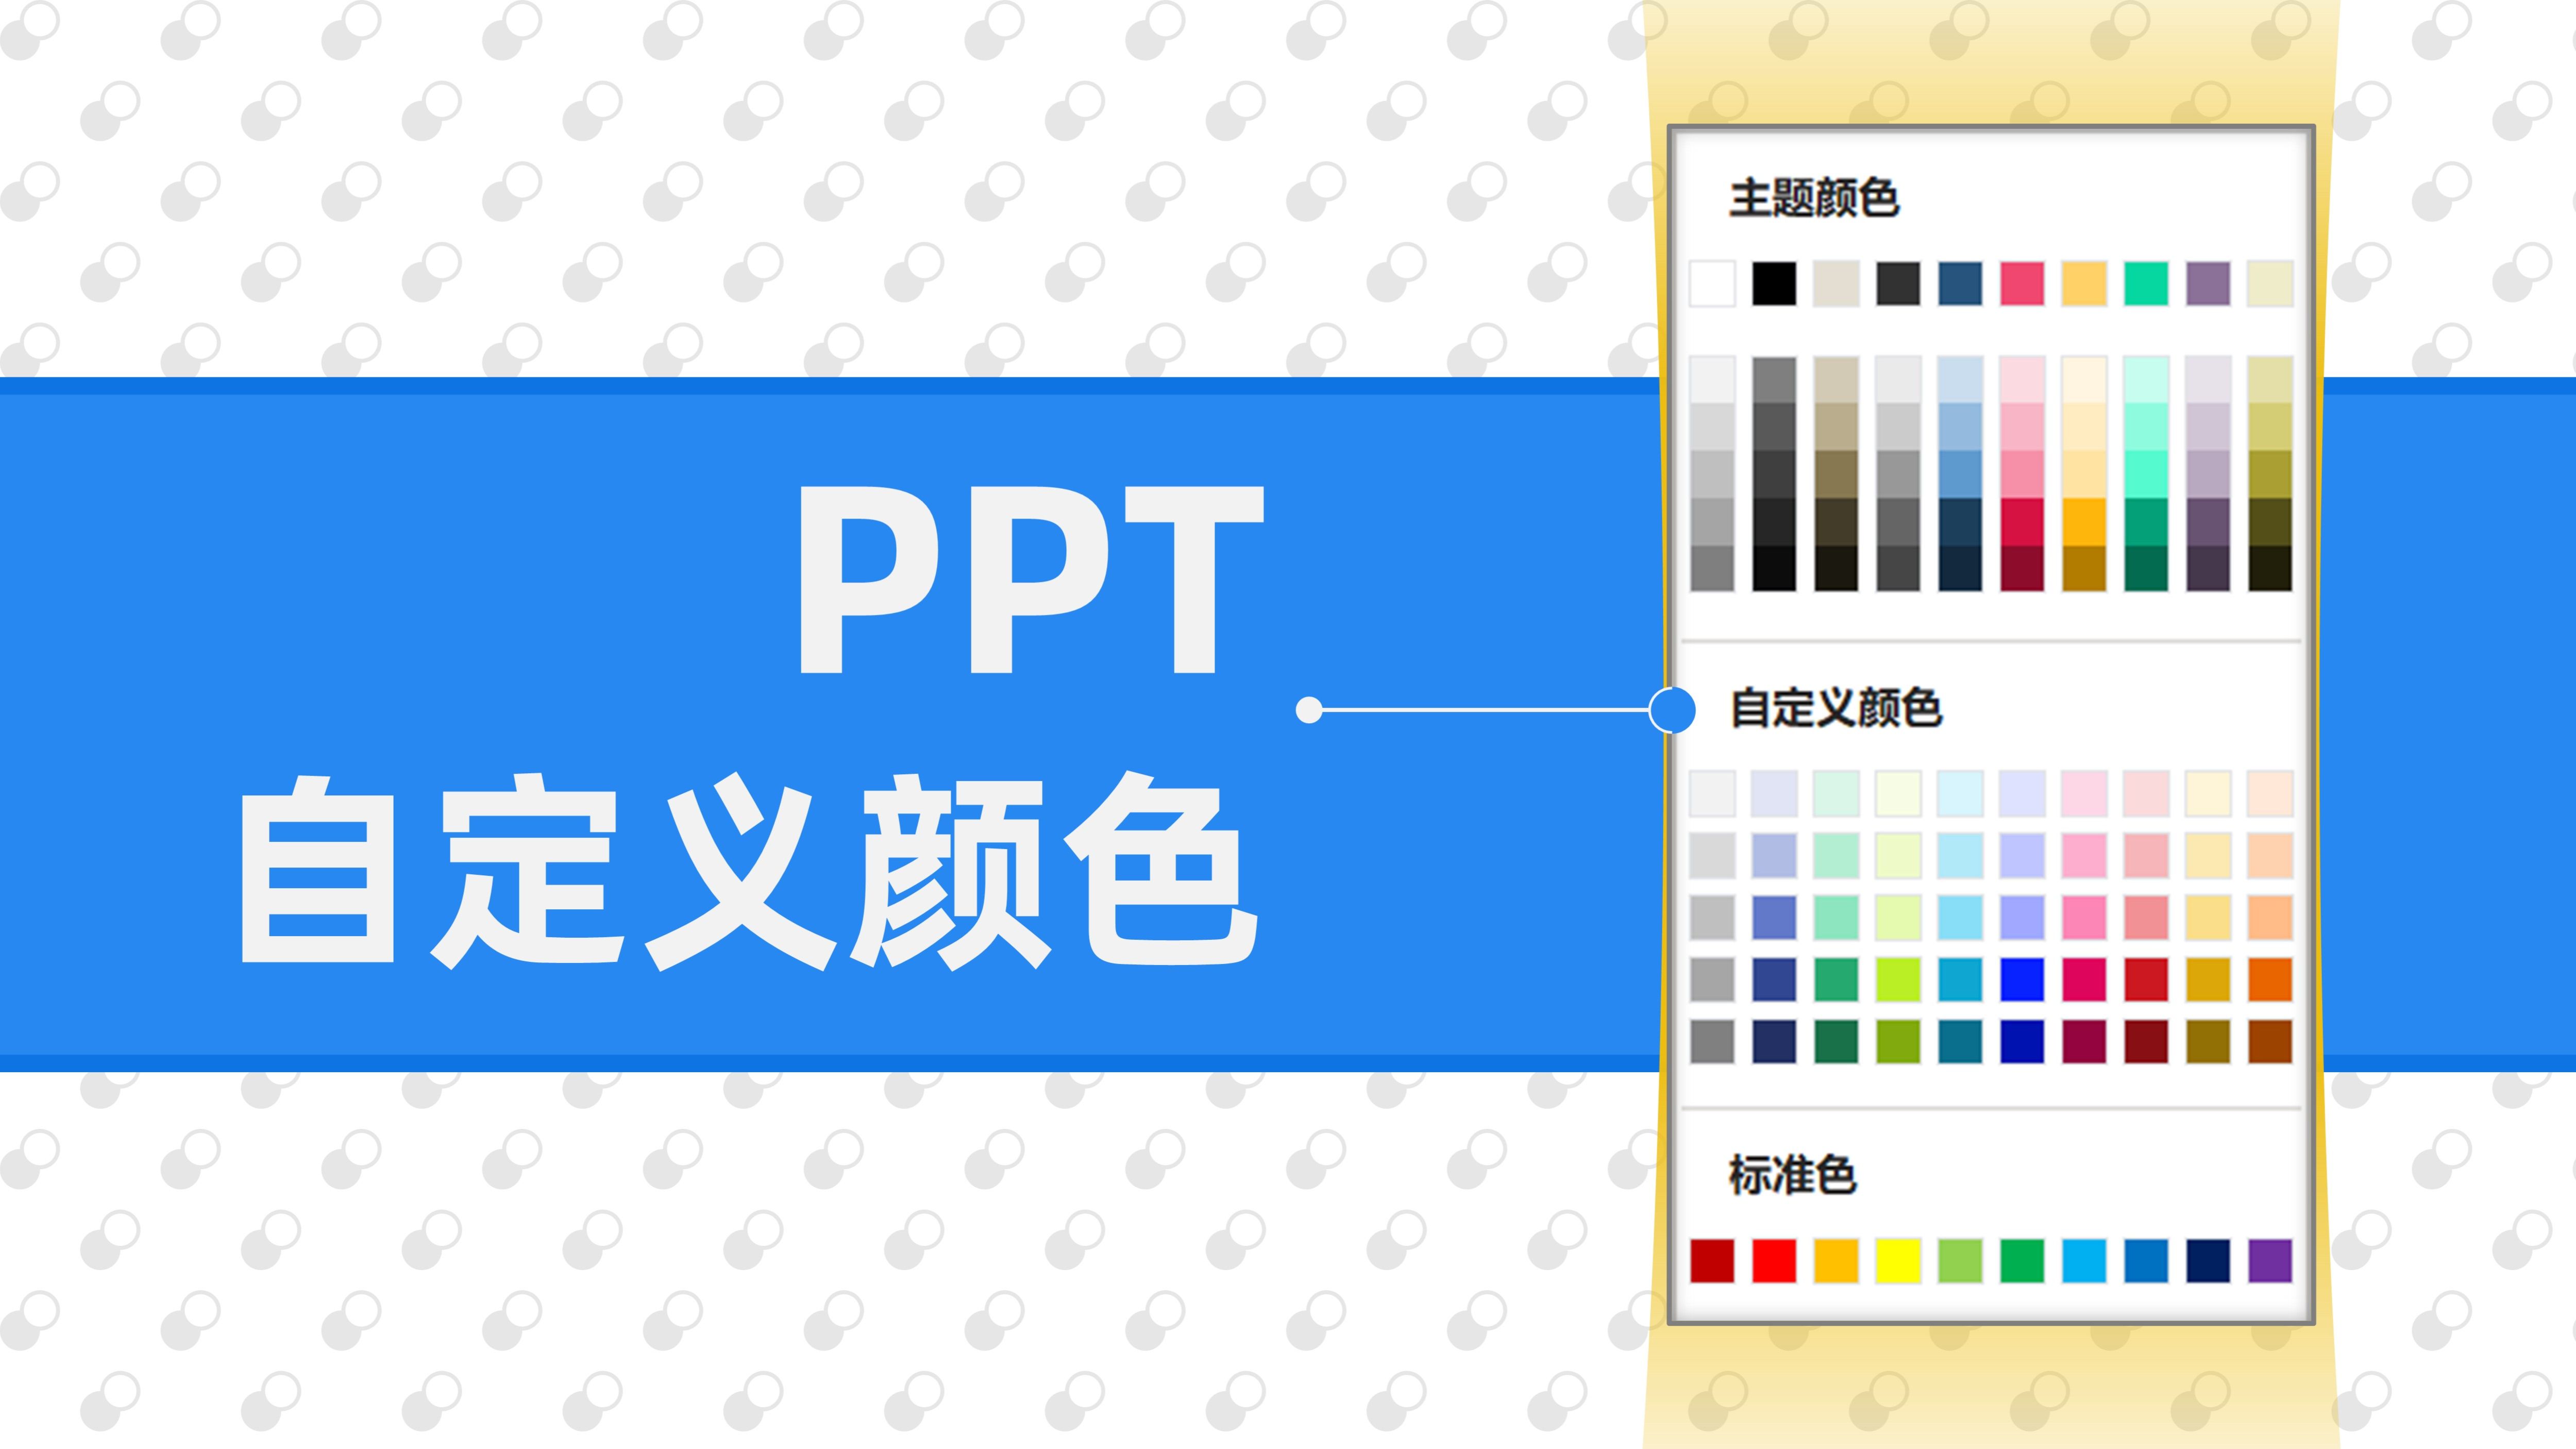 PPT中如何更改图片颜色-PPT中修改图片颜色的方法教程 - 极光下载站